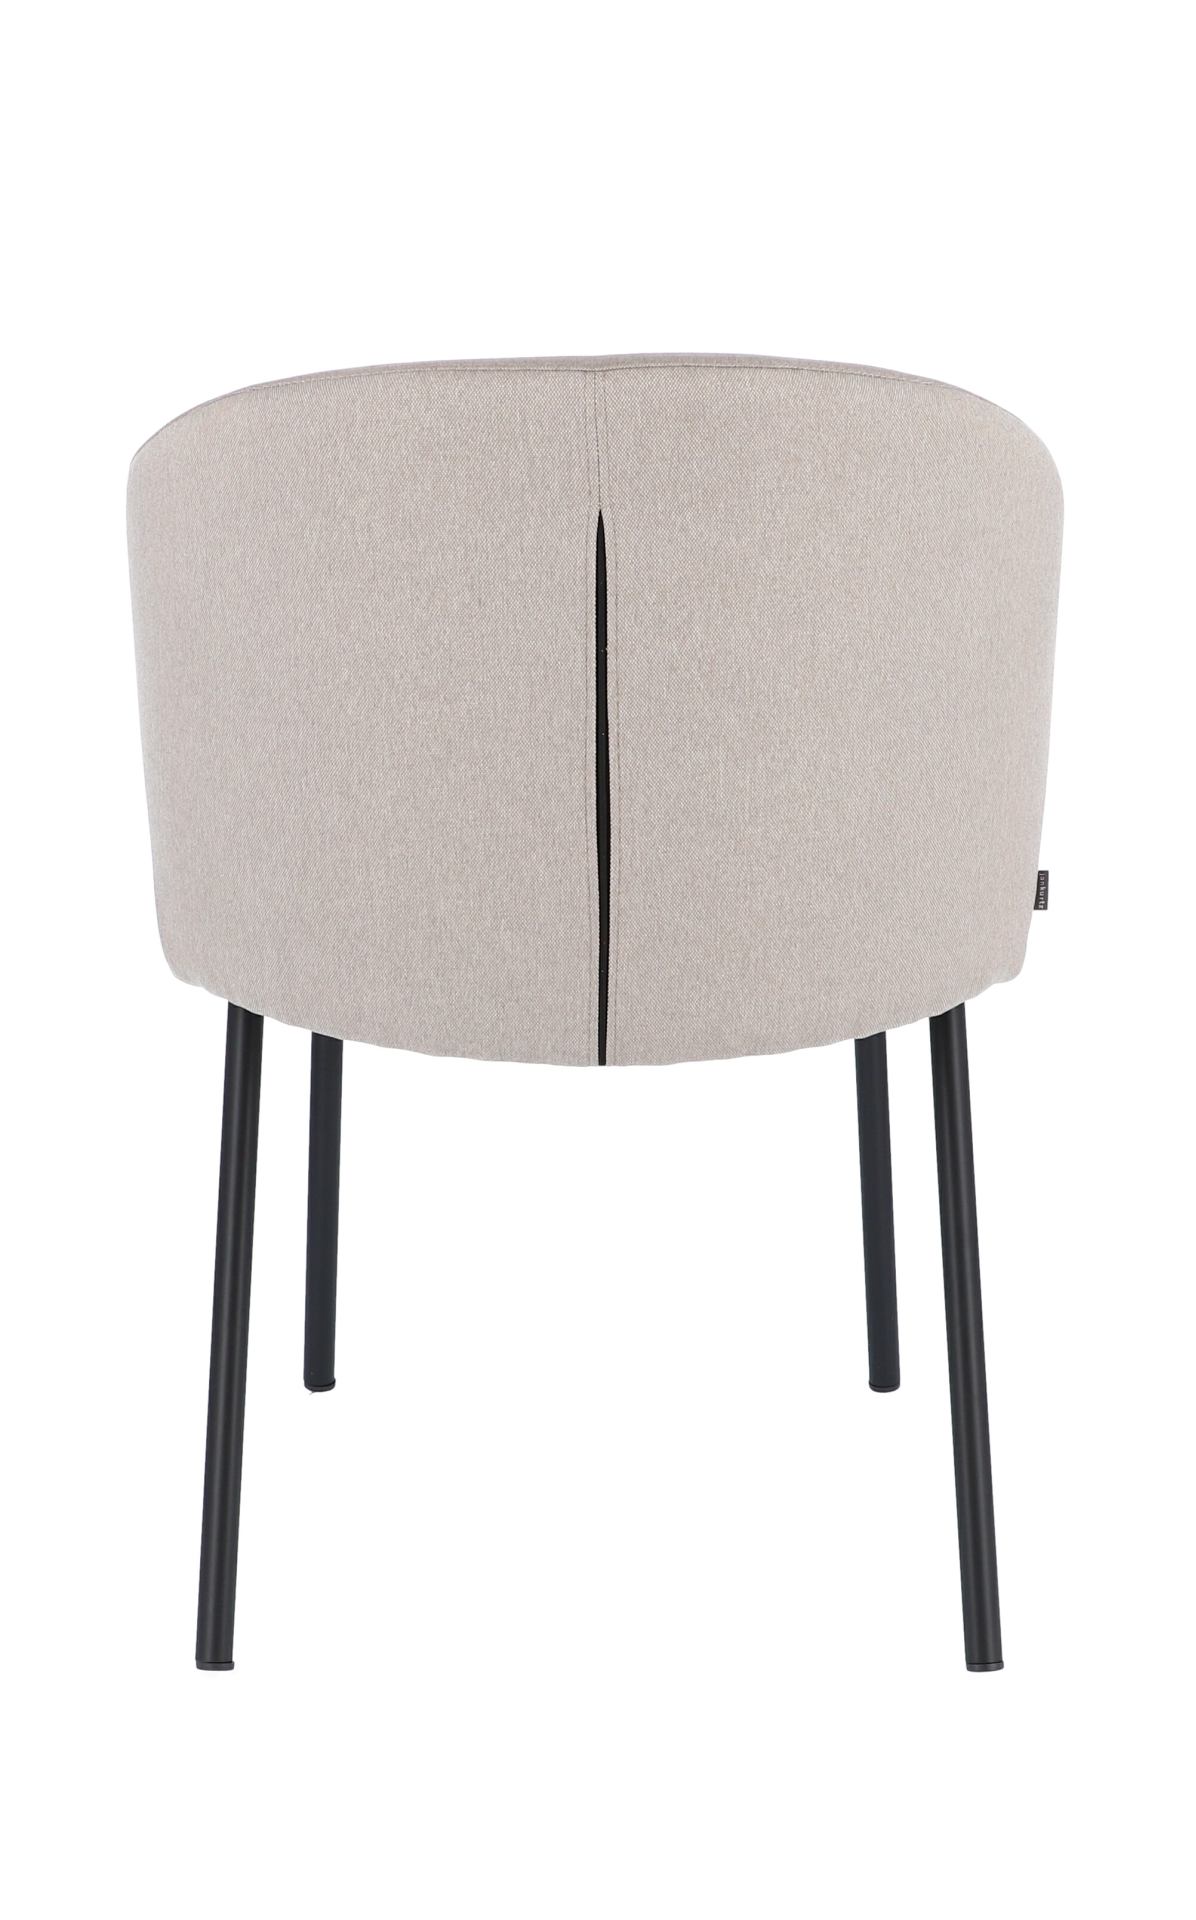 Der moderne Stuhl Mila wurde aus einem Metall Gestell hergestellt. Die Sitz- und Rückenfläche ist aus einem Stoff Bezug. Die Farbe des Stuhls ist Beige. Es ist ein Produkt der Marke Jan Kurtz.